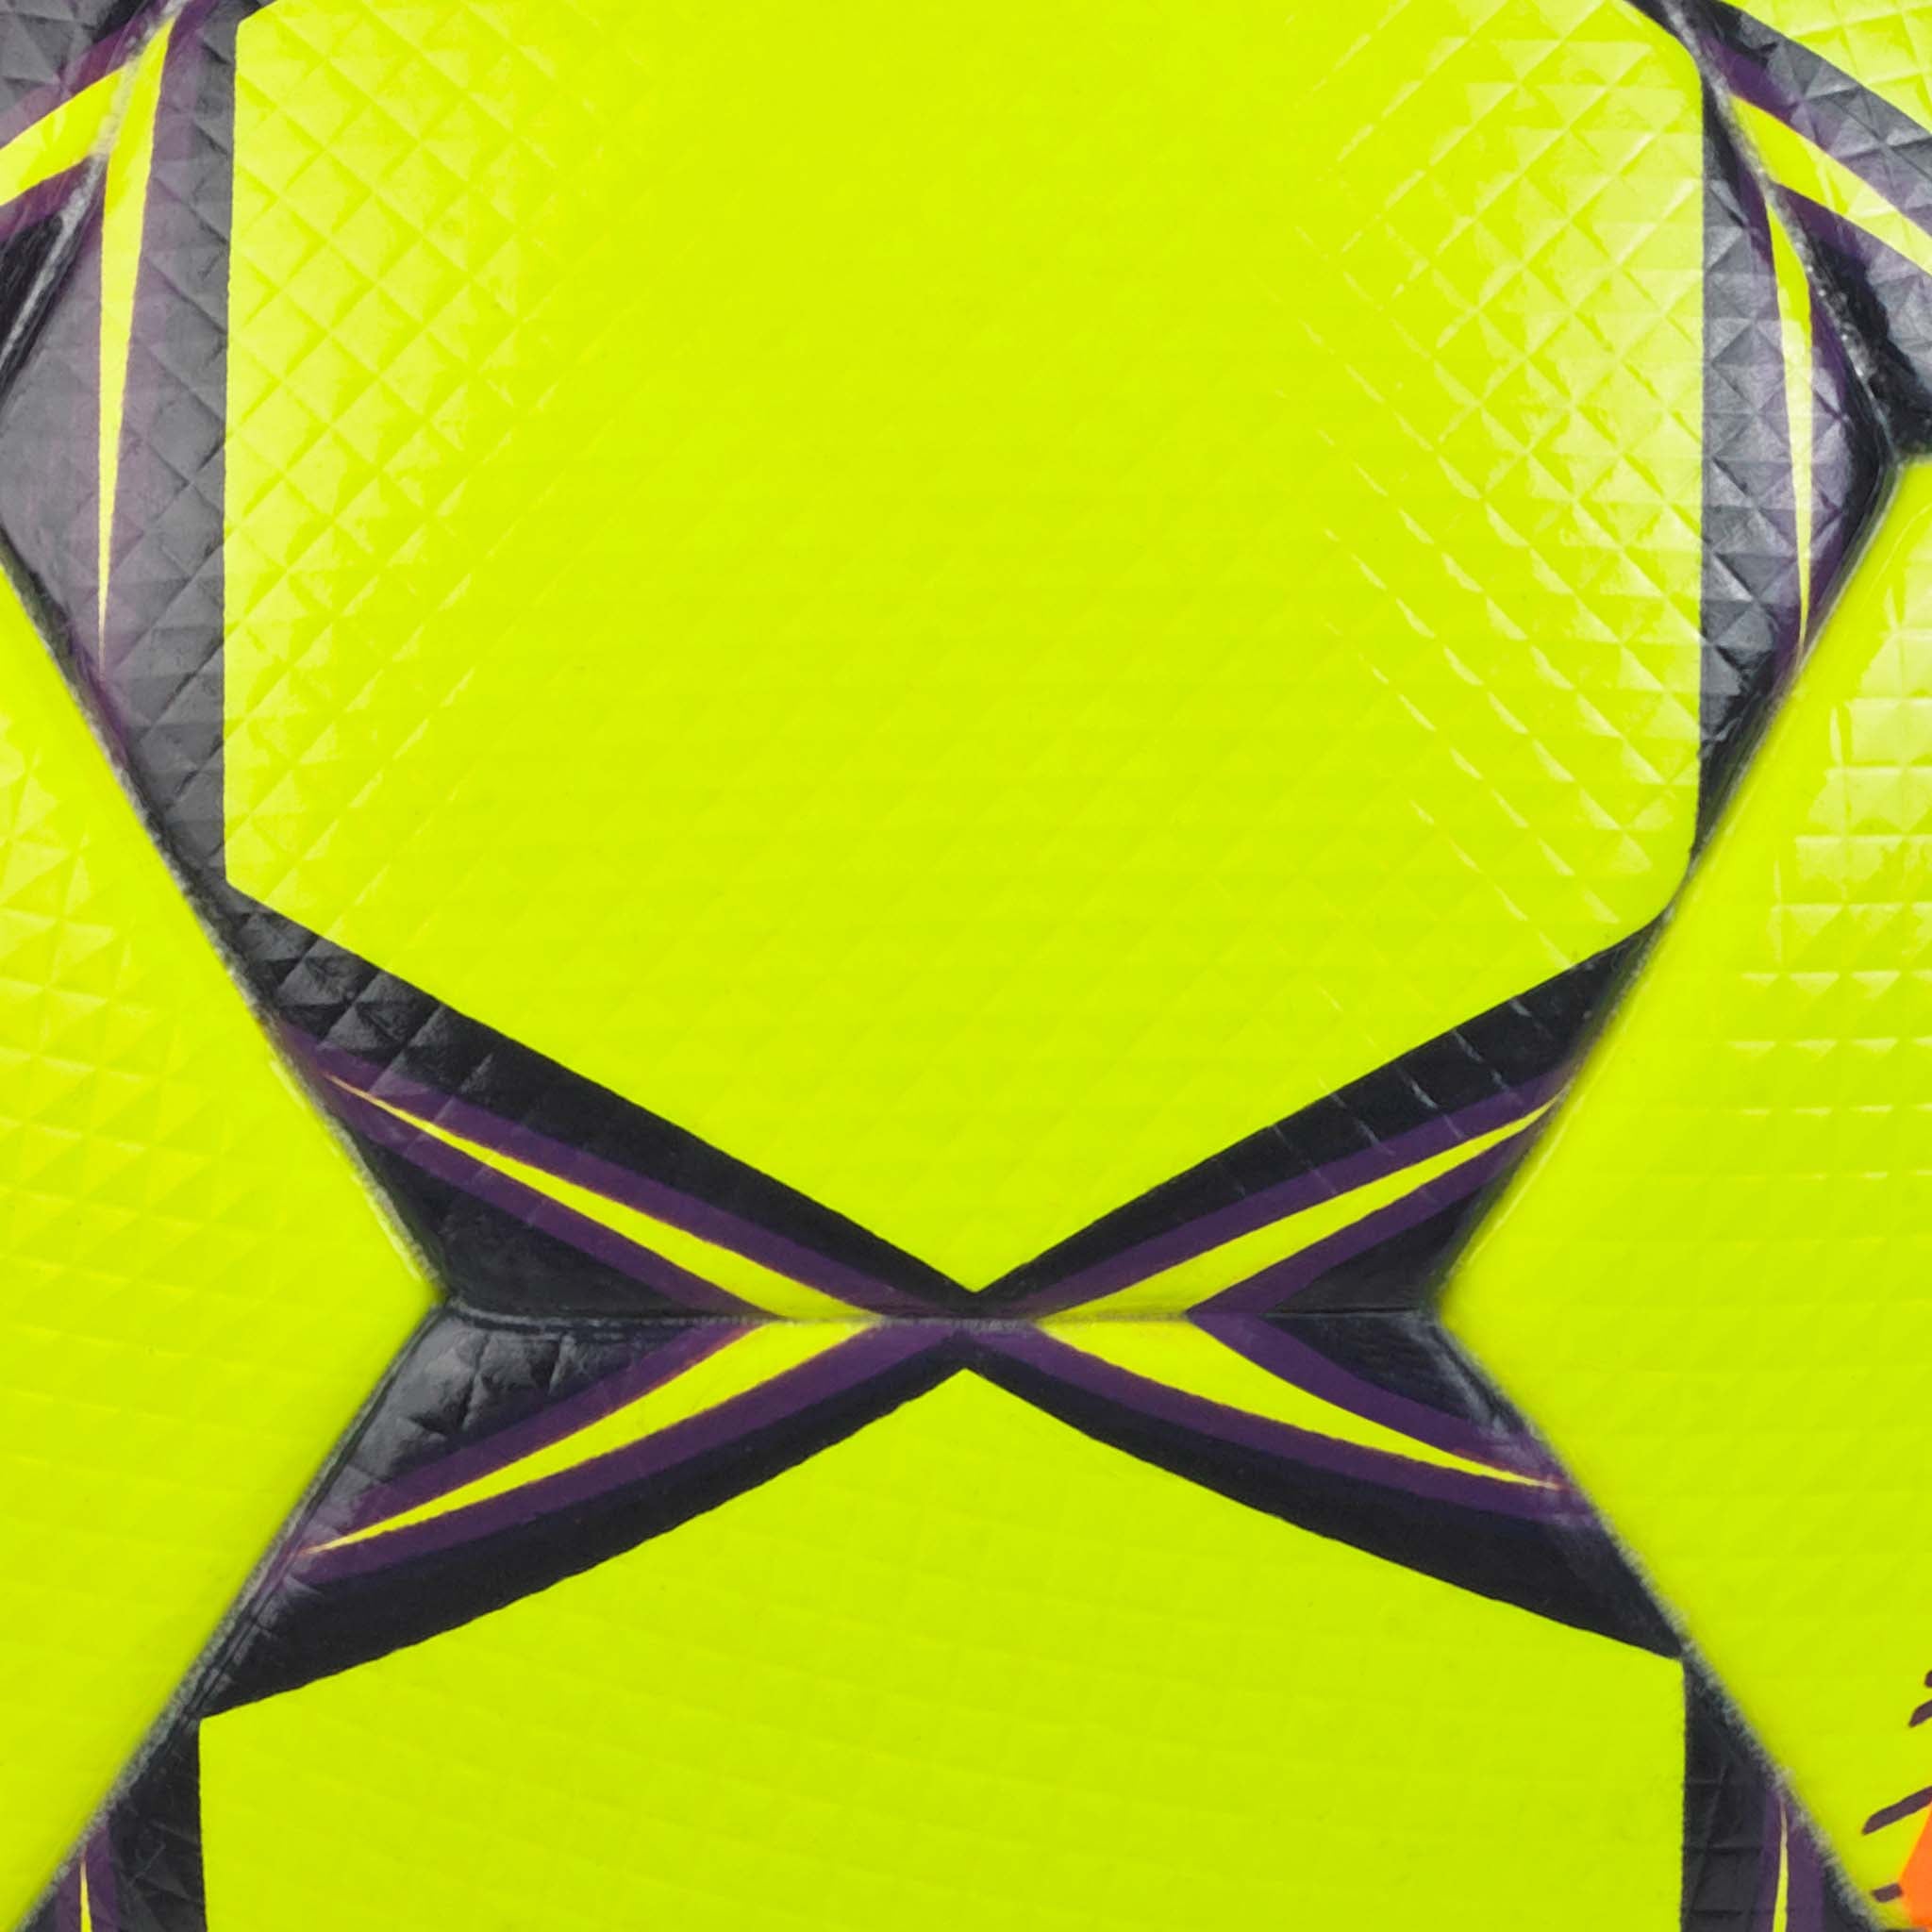 Fodbold - Brillant Super TB #farve_yellow/purple